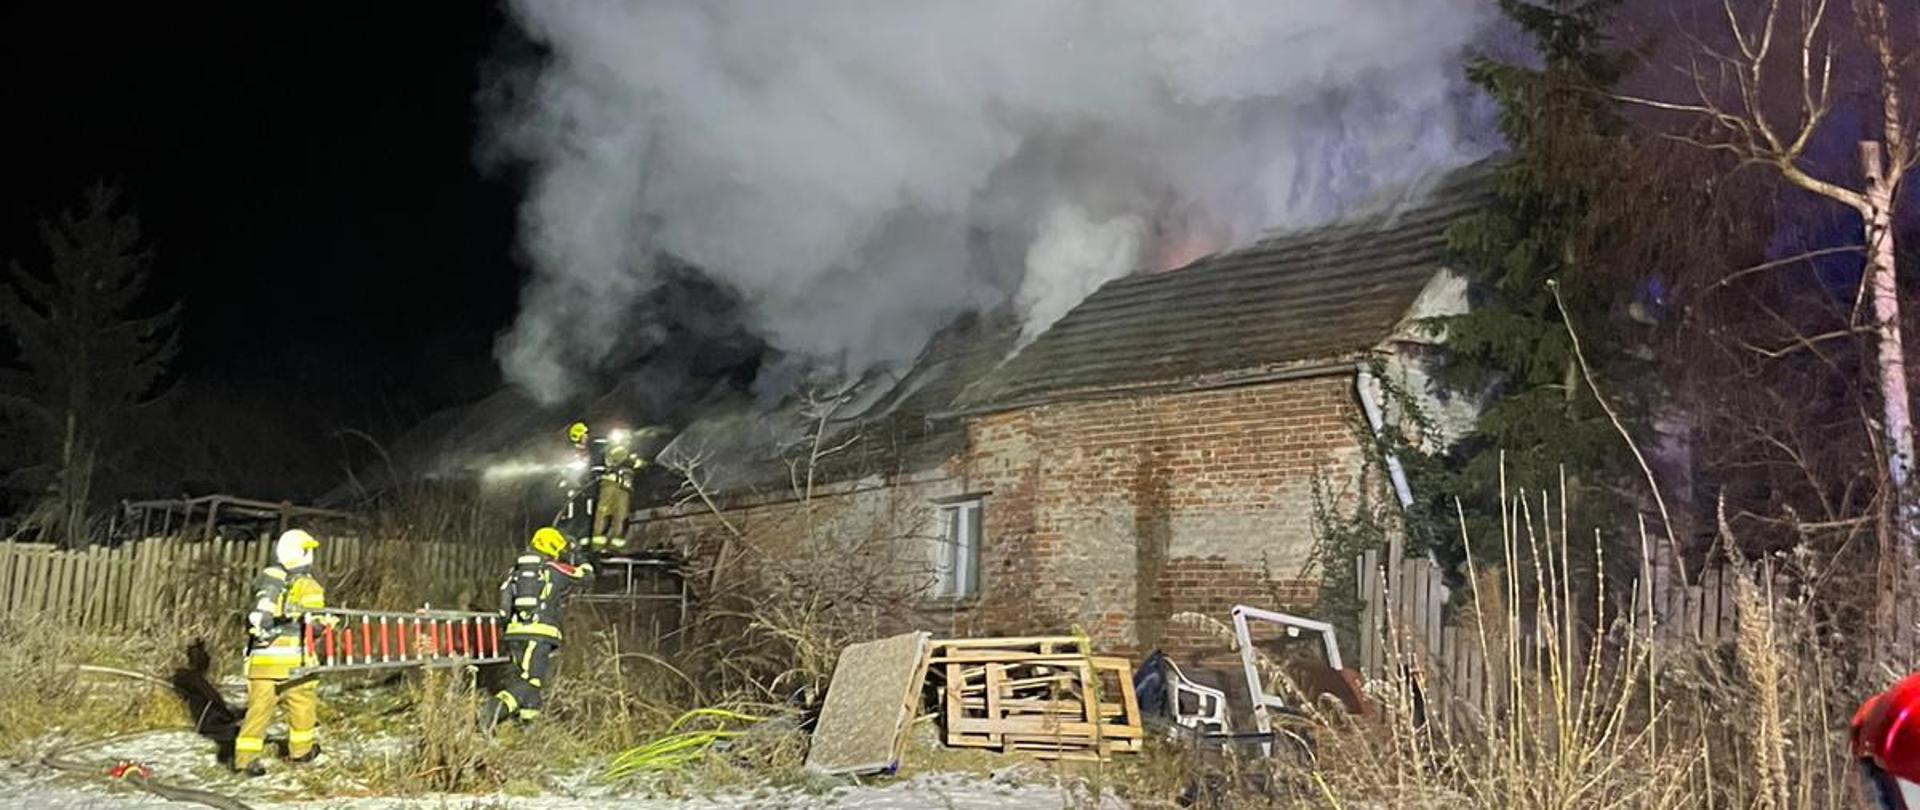 Pożar domu w m. Dąbrowa, strażacy gaszą pożar z zewnątrz budynku